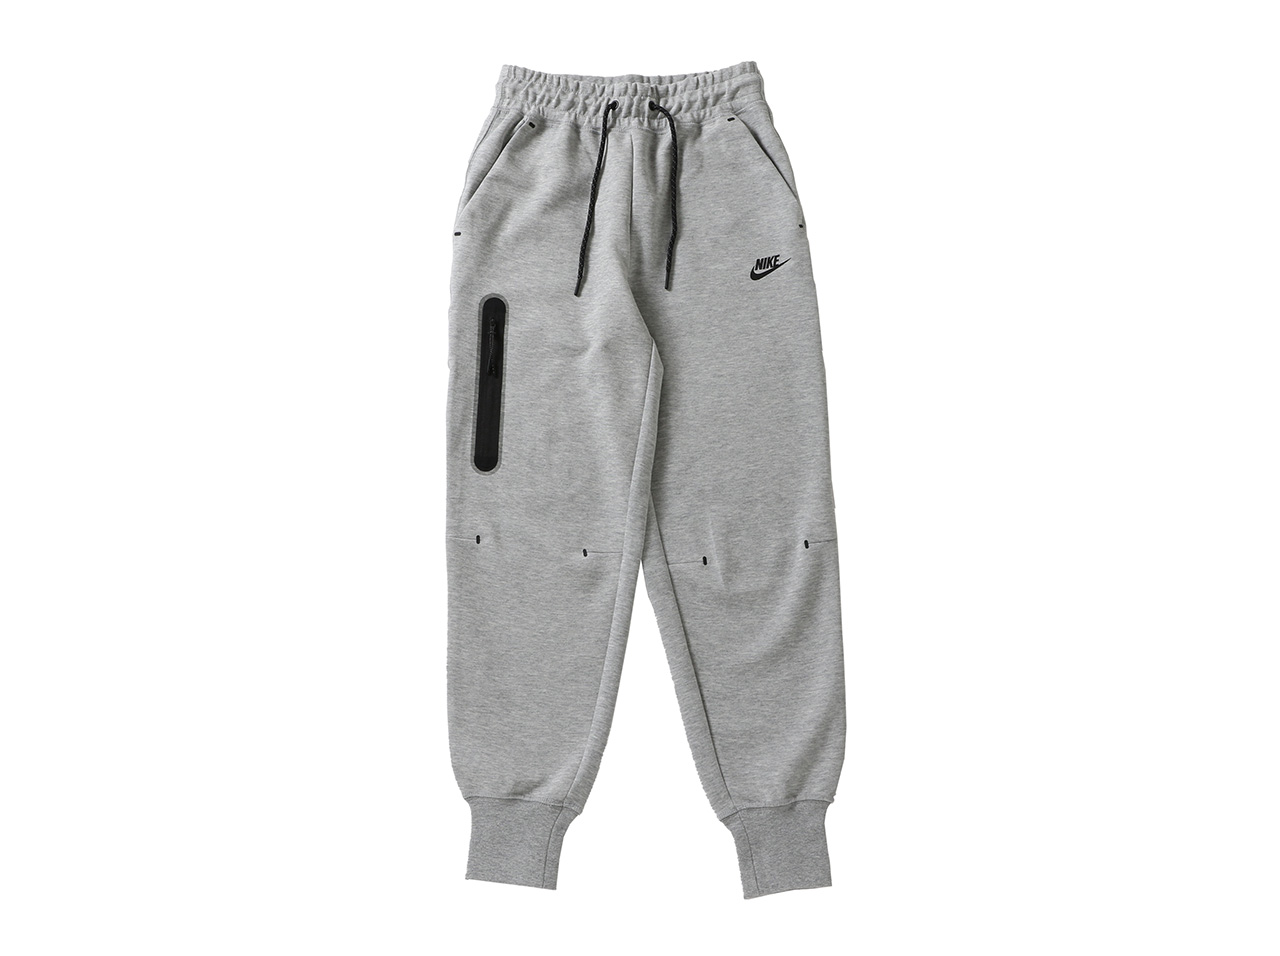 楽天市場 Nike Wmns Tech Fleece Pants Cw4293 063 ナイキ テックフリースパンツ レディース ボトムス パンツ スウェット Figure